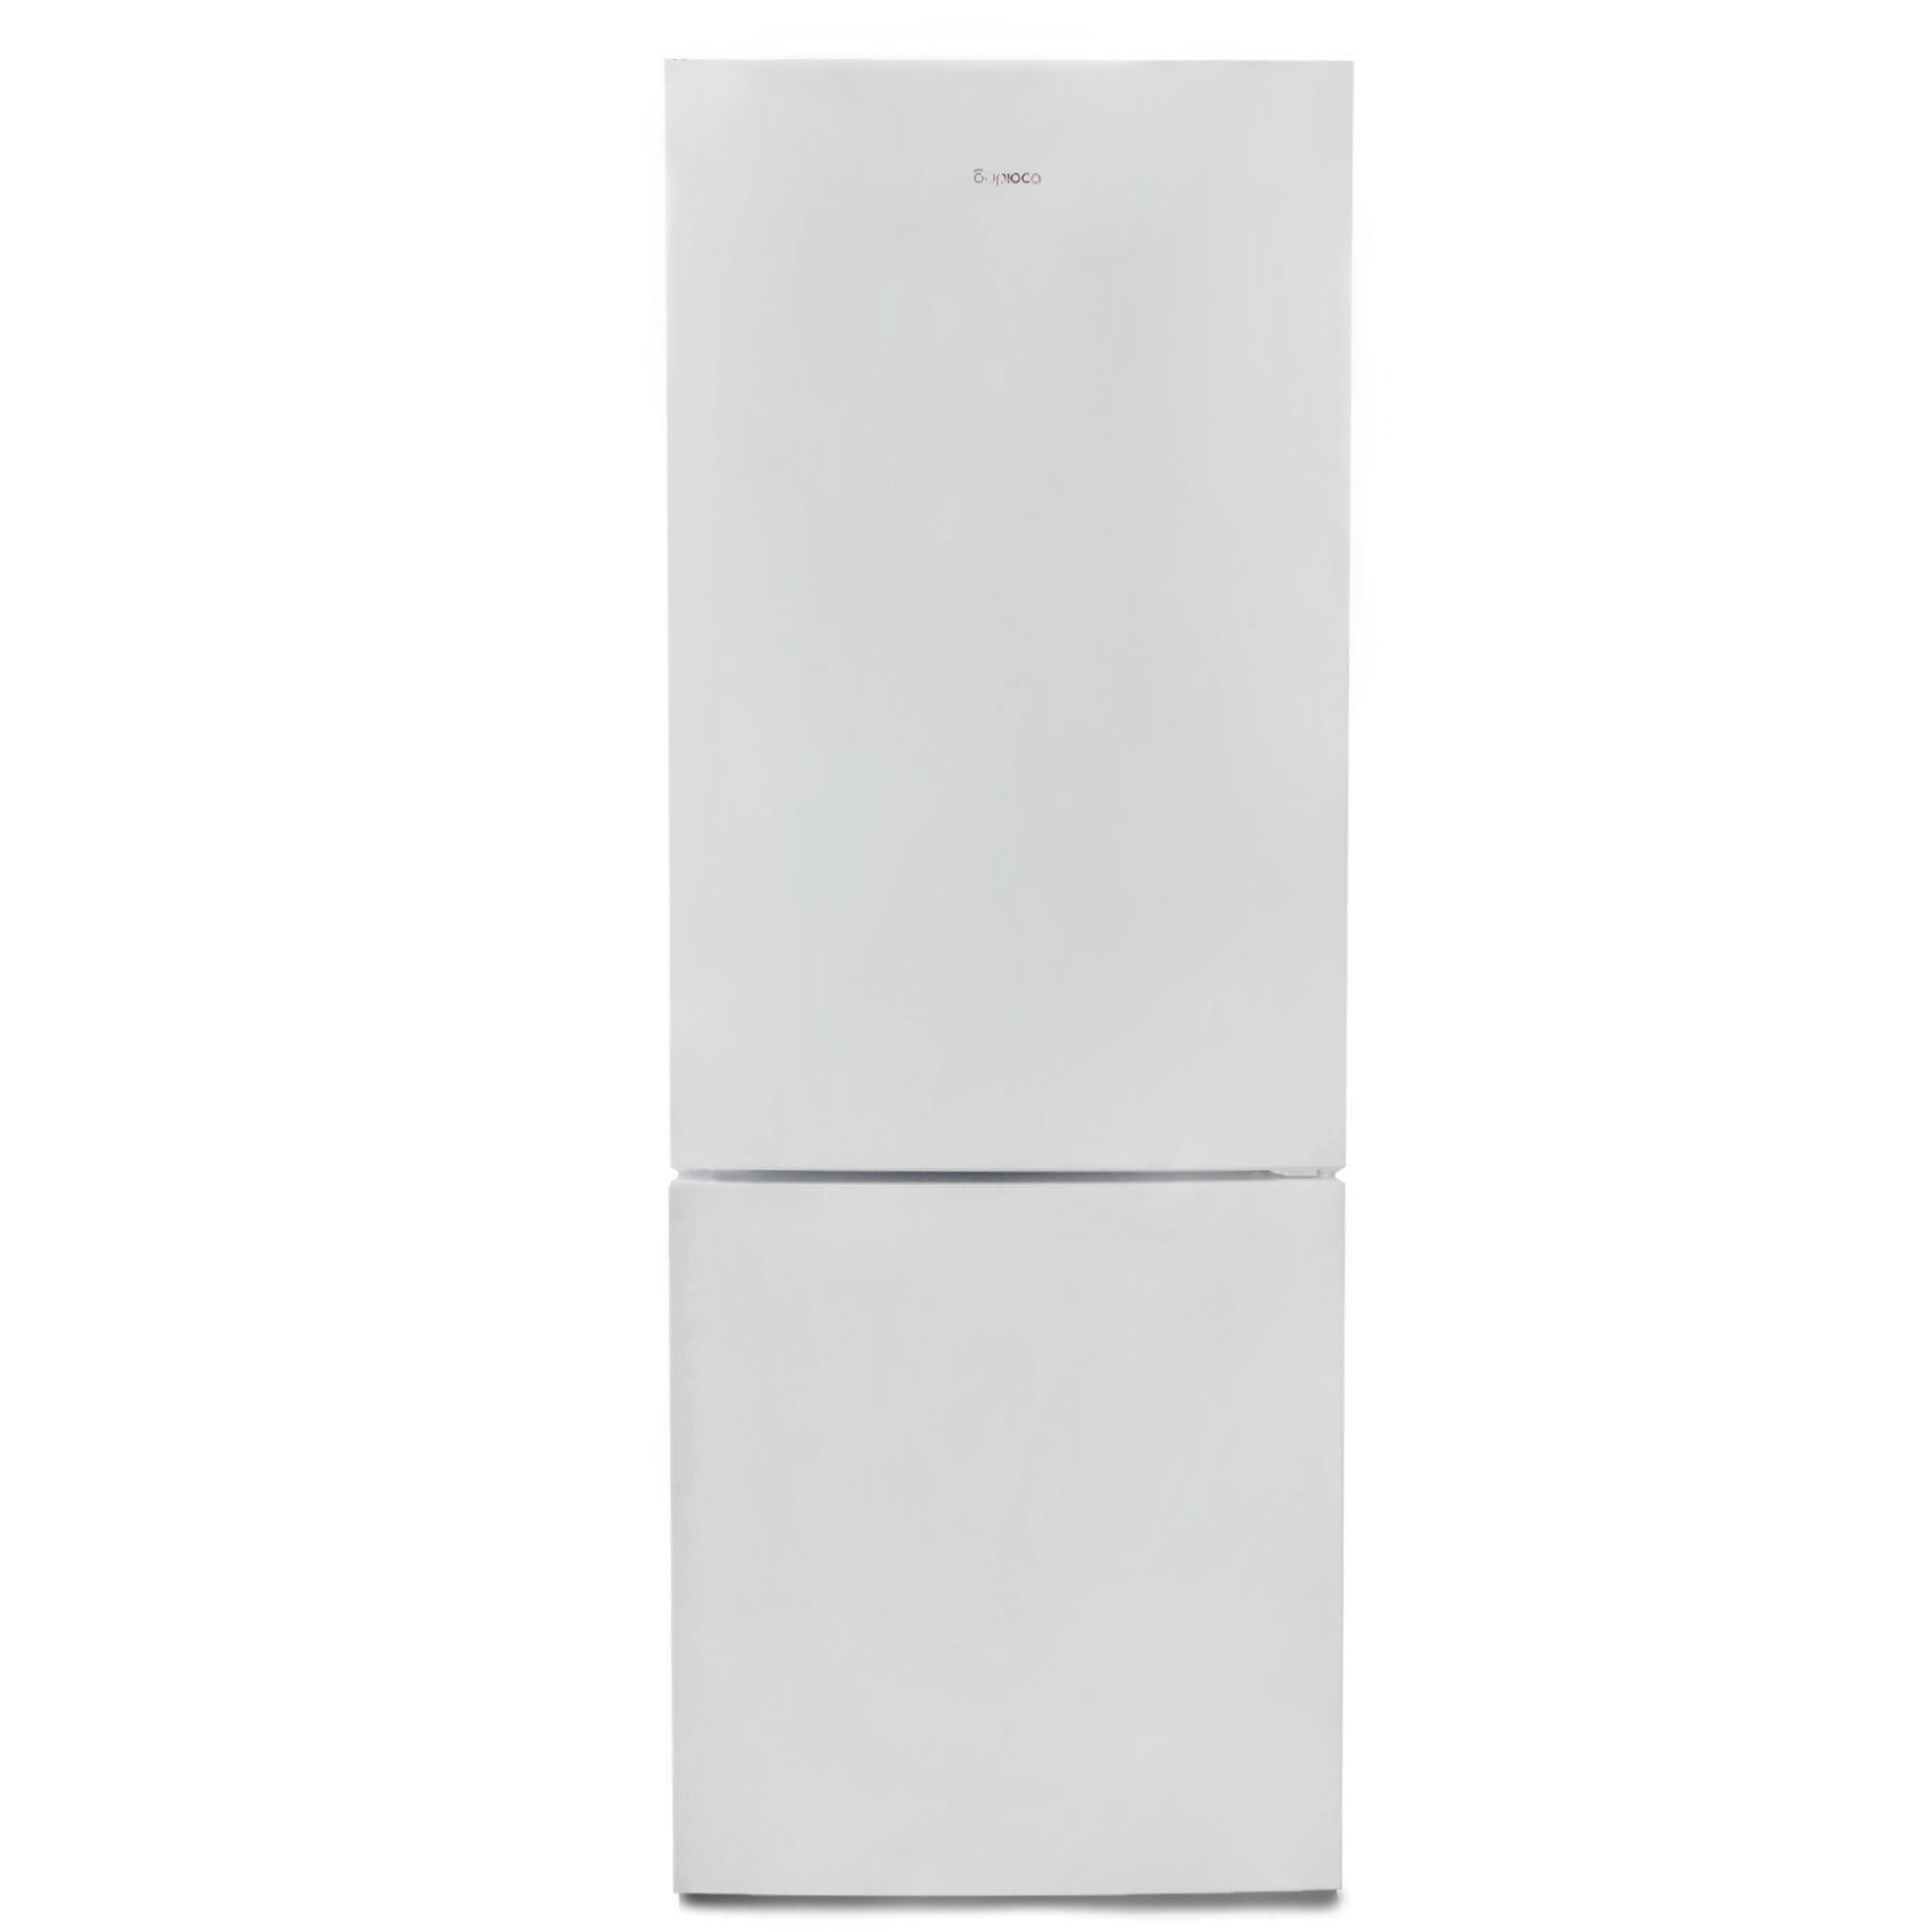 91054820 Отдельностоящий холодильник Б-6034 60x165 см цвет белый STLM-0460034 БИРЮСА